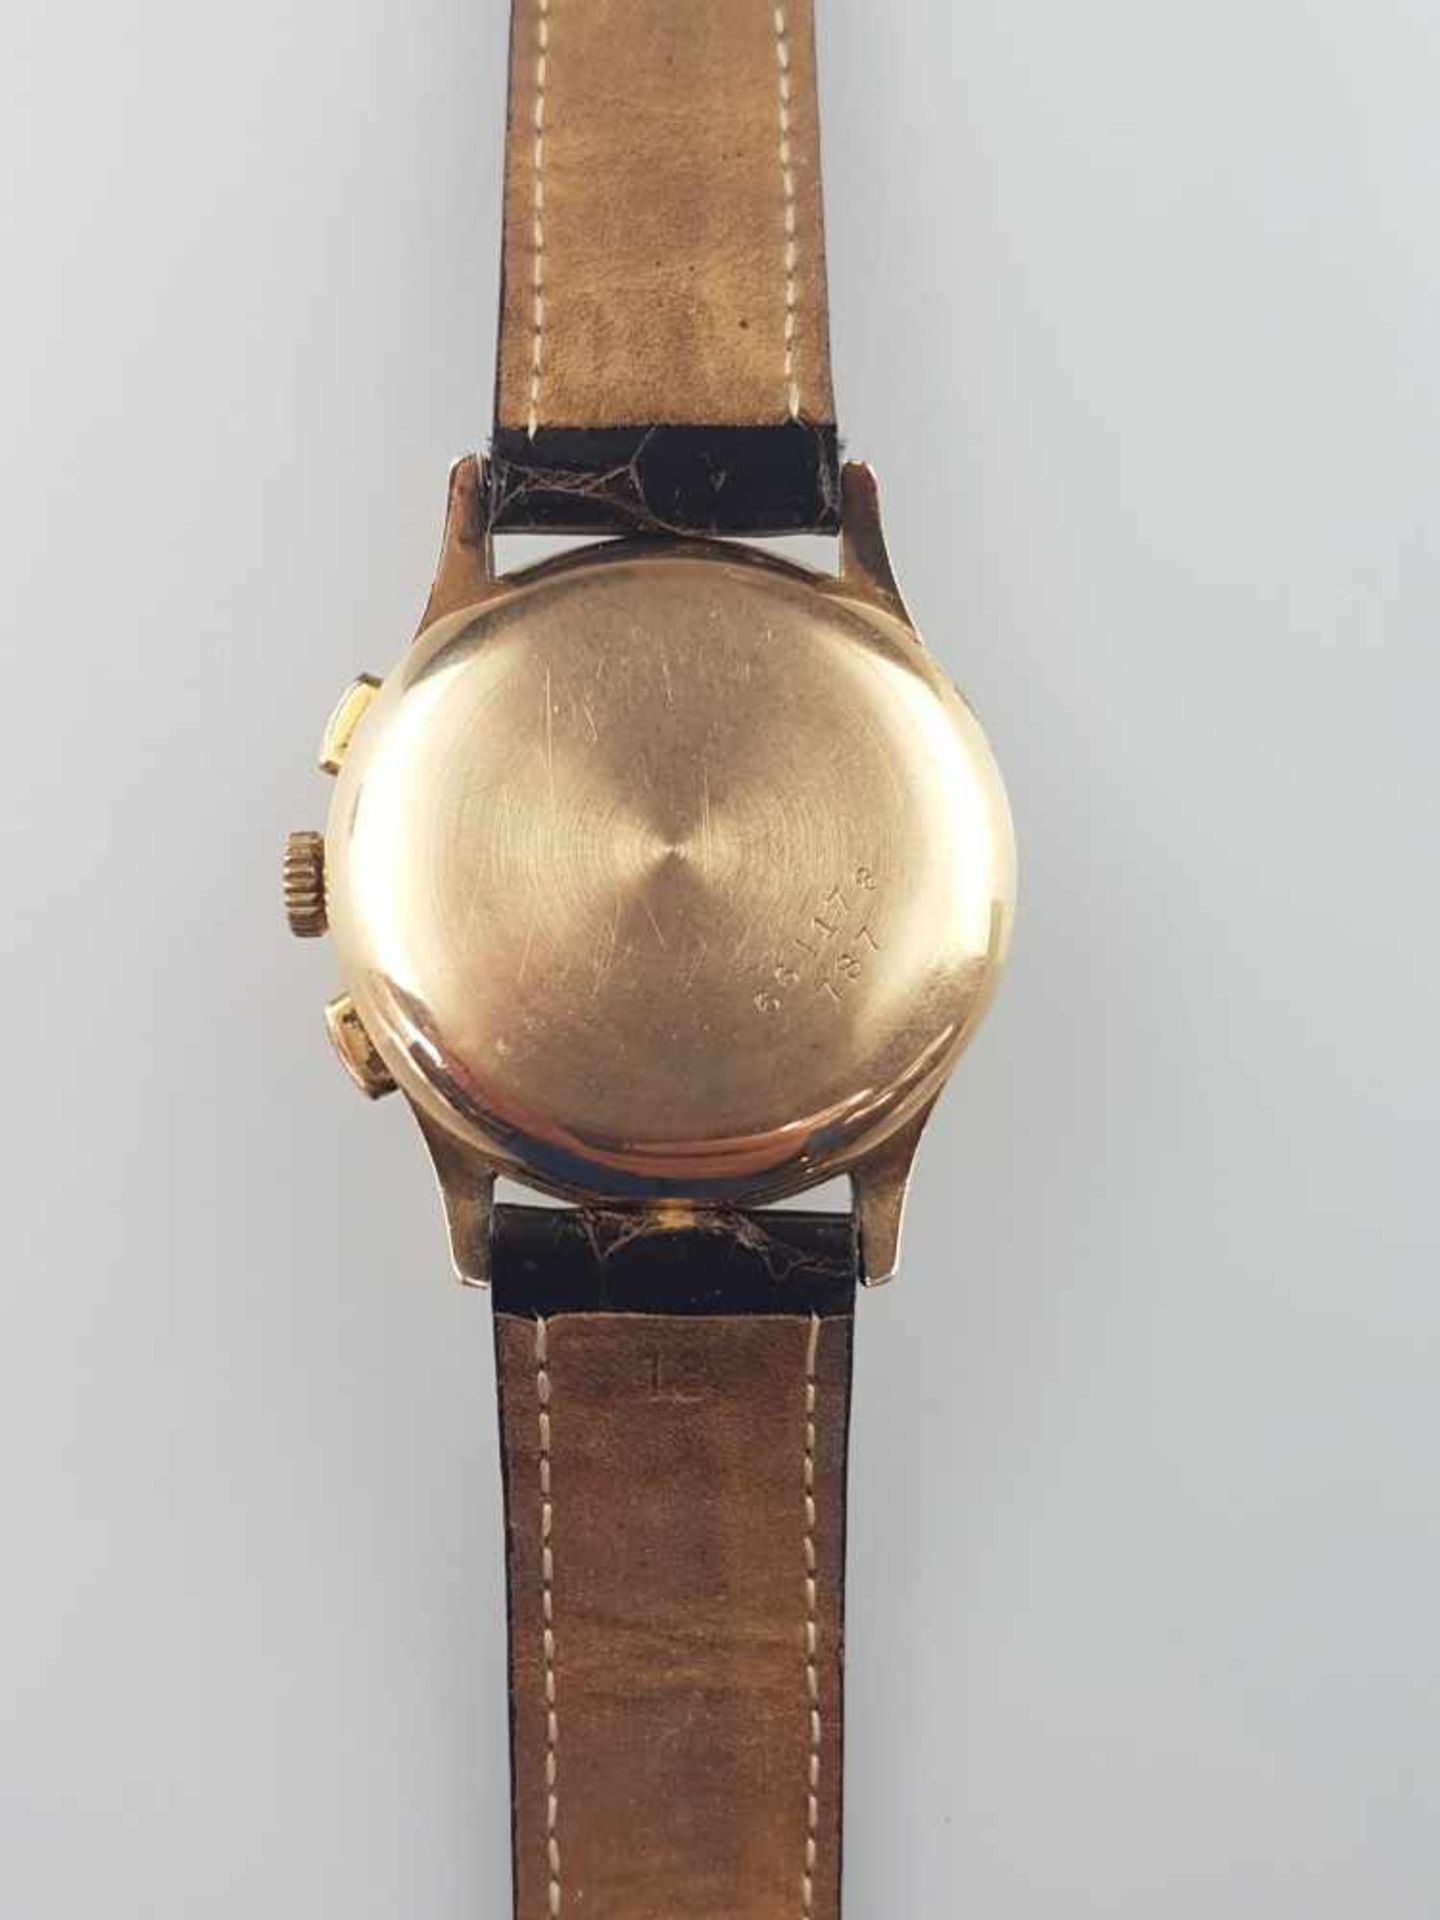 Herrenarmbanduhr - Breitling Schaltrad-Chronograph in Gelbgold 750/000, 1940-50er Jahre, Gehäuse, - Bild 5 aus 7